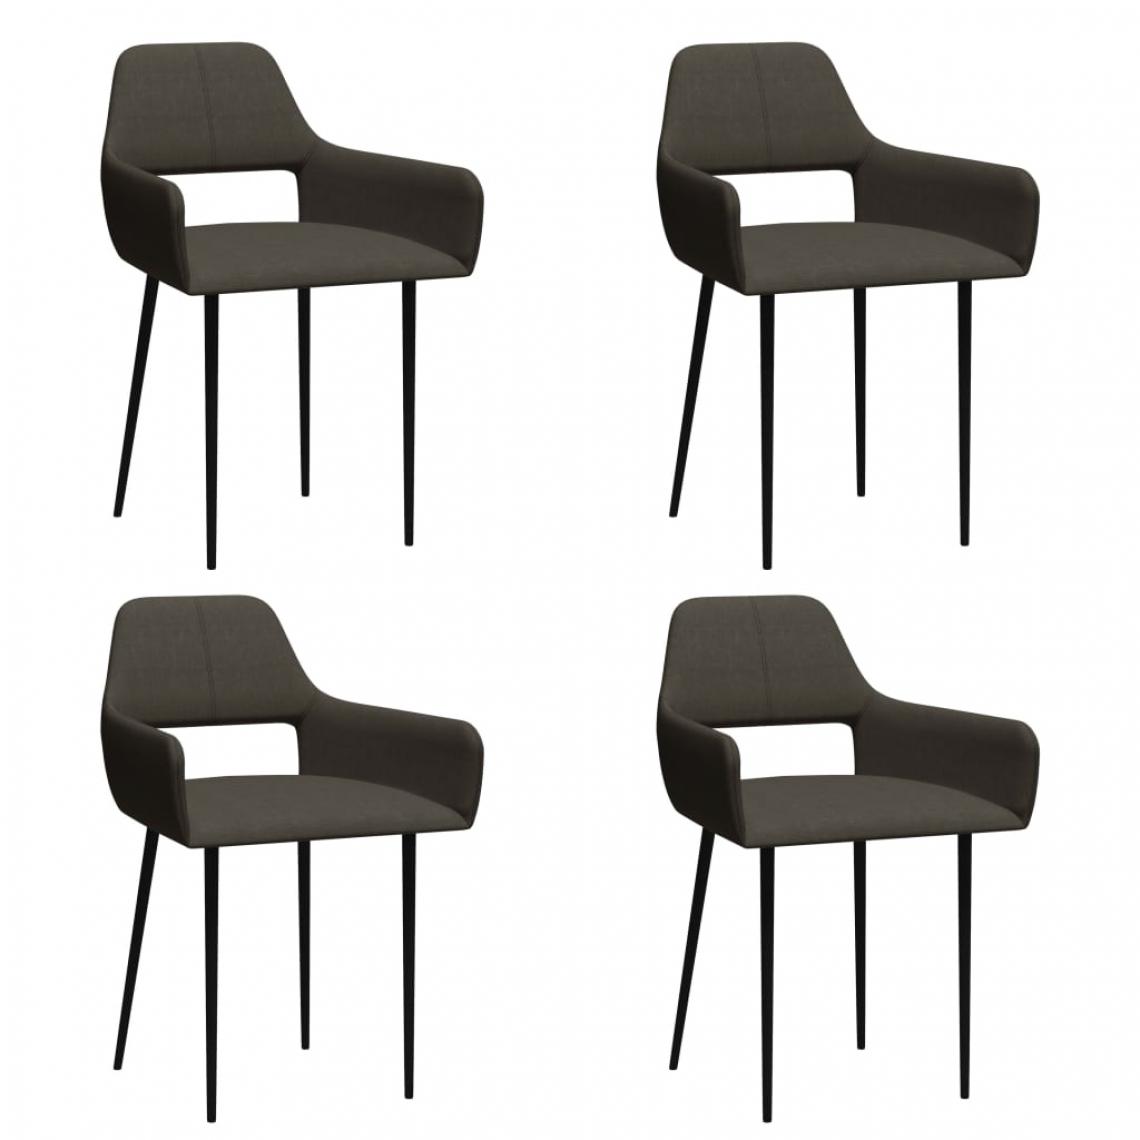 Icaverne - Admirable Fauteuils et chaises edition Tripoli Chaises de salle à manger 4 pcs Taupe Tissu - Chaises